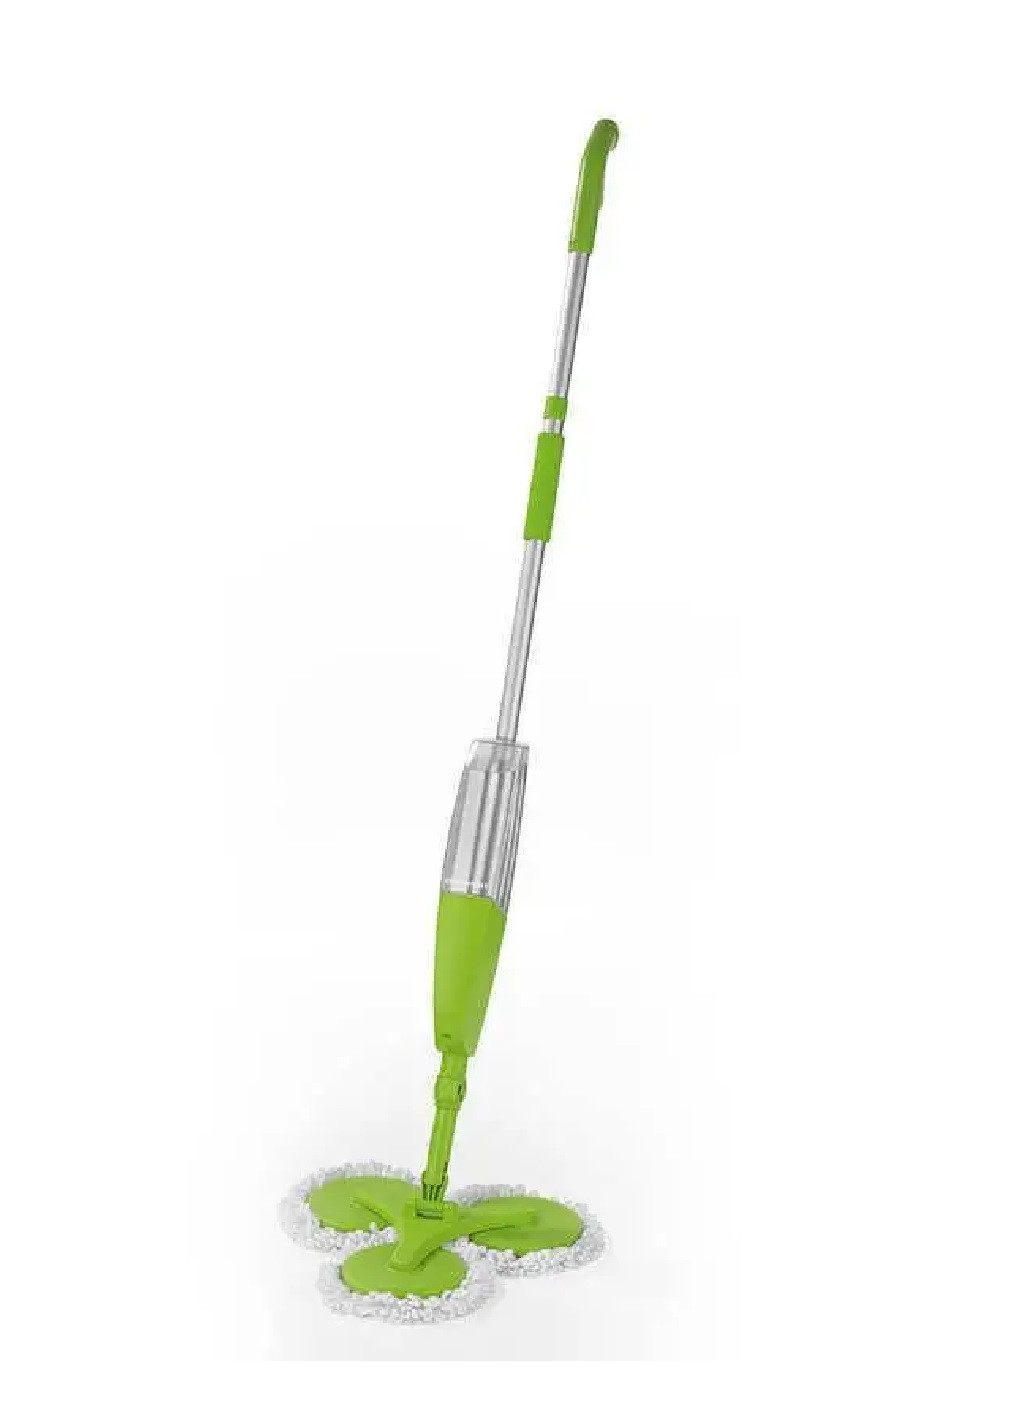 Гибкая тройная швабра с распылителем 3 Magic Mop телескопическая ручка микрофибровые насадки 40x130x40 см (474094-Prob) Зеленая Unbranded (257309441)